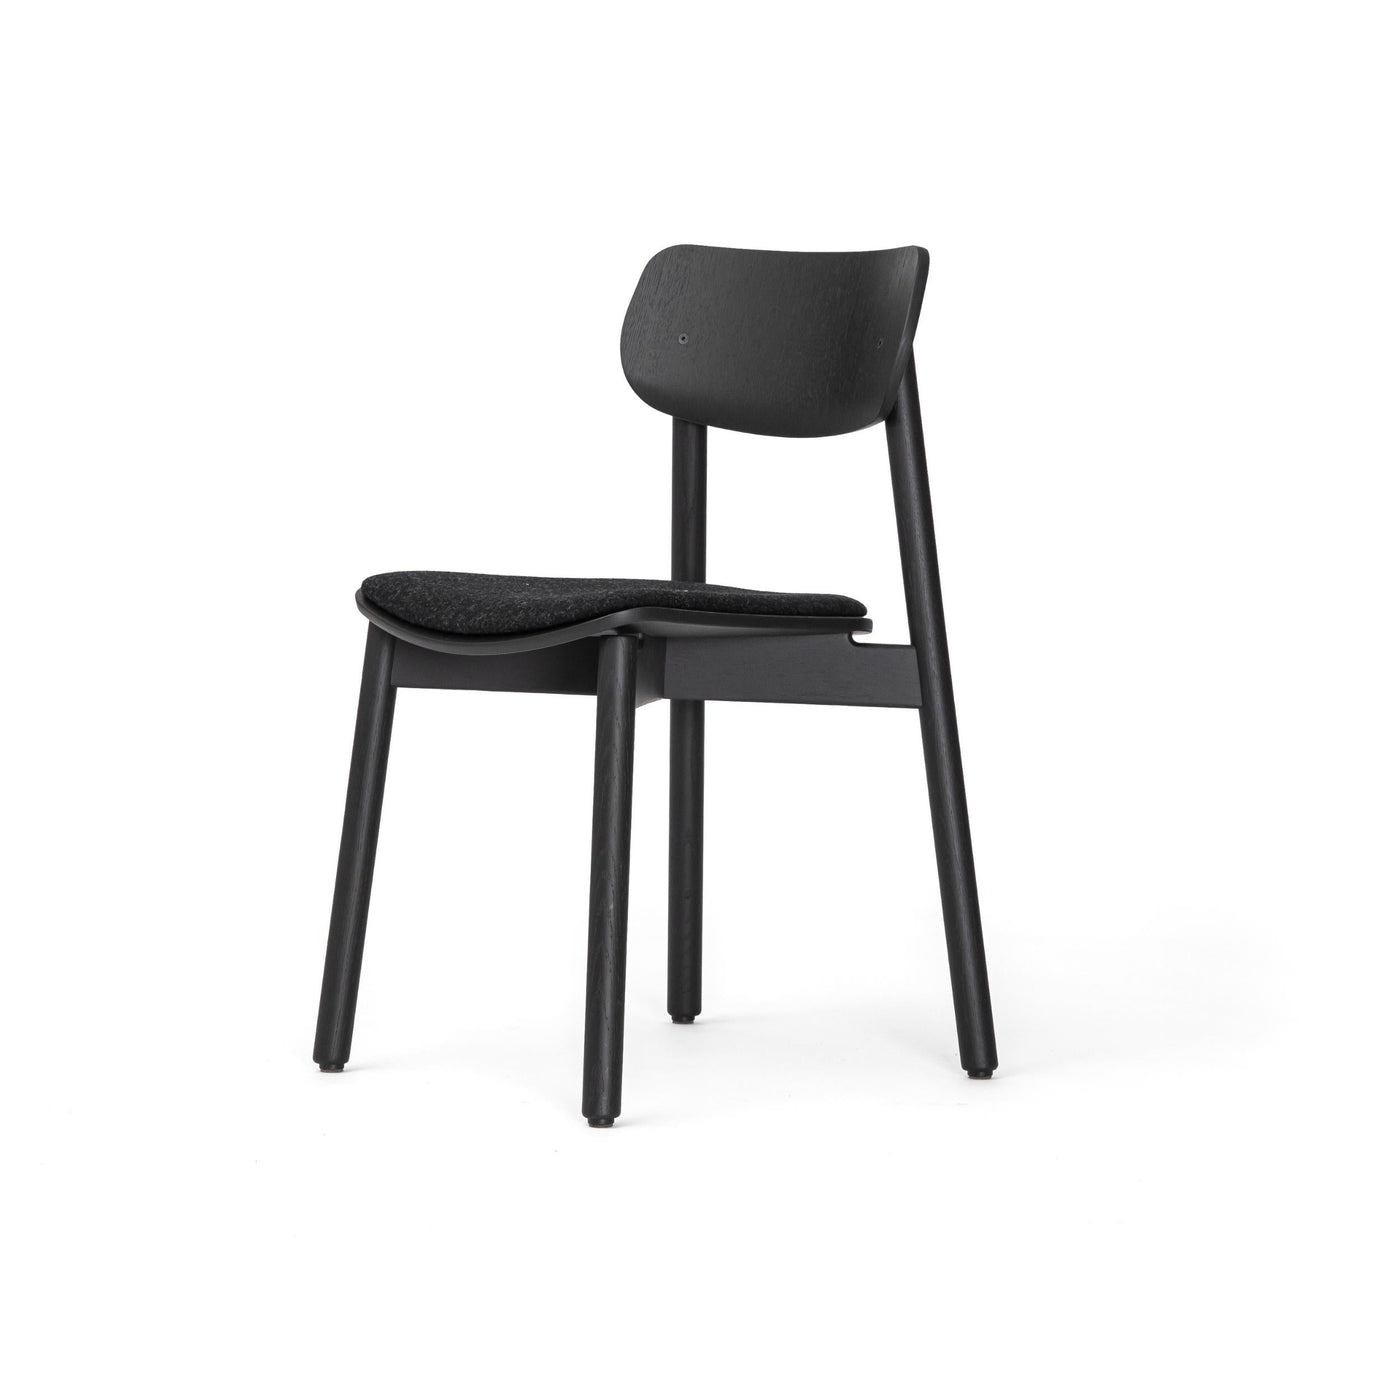 John Green Otis Chair Upholstered. British design at someday designs. #seat_pad_black-wool